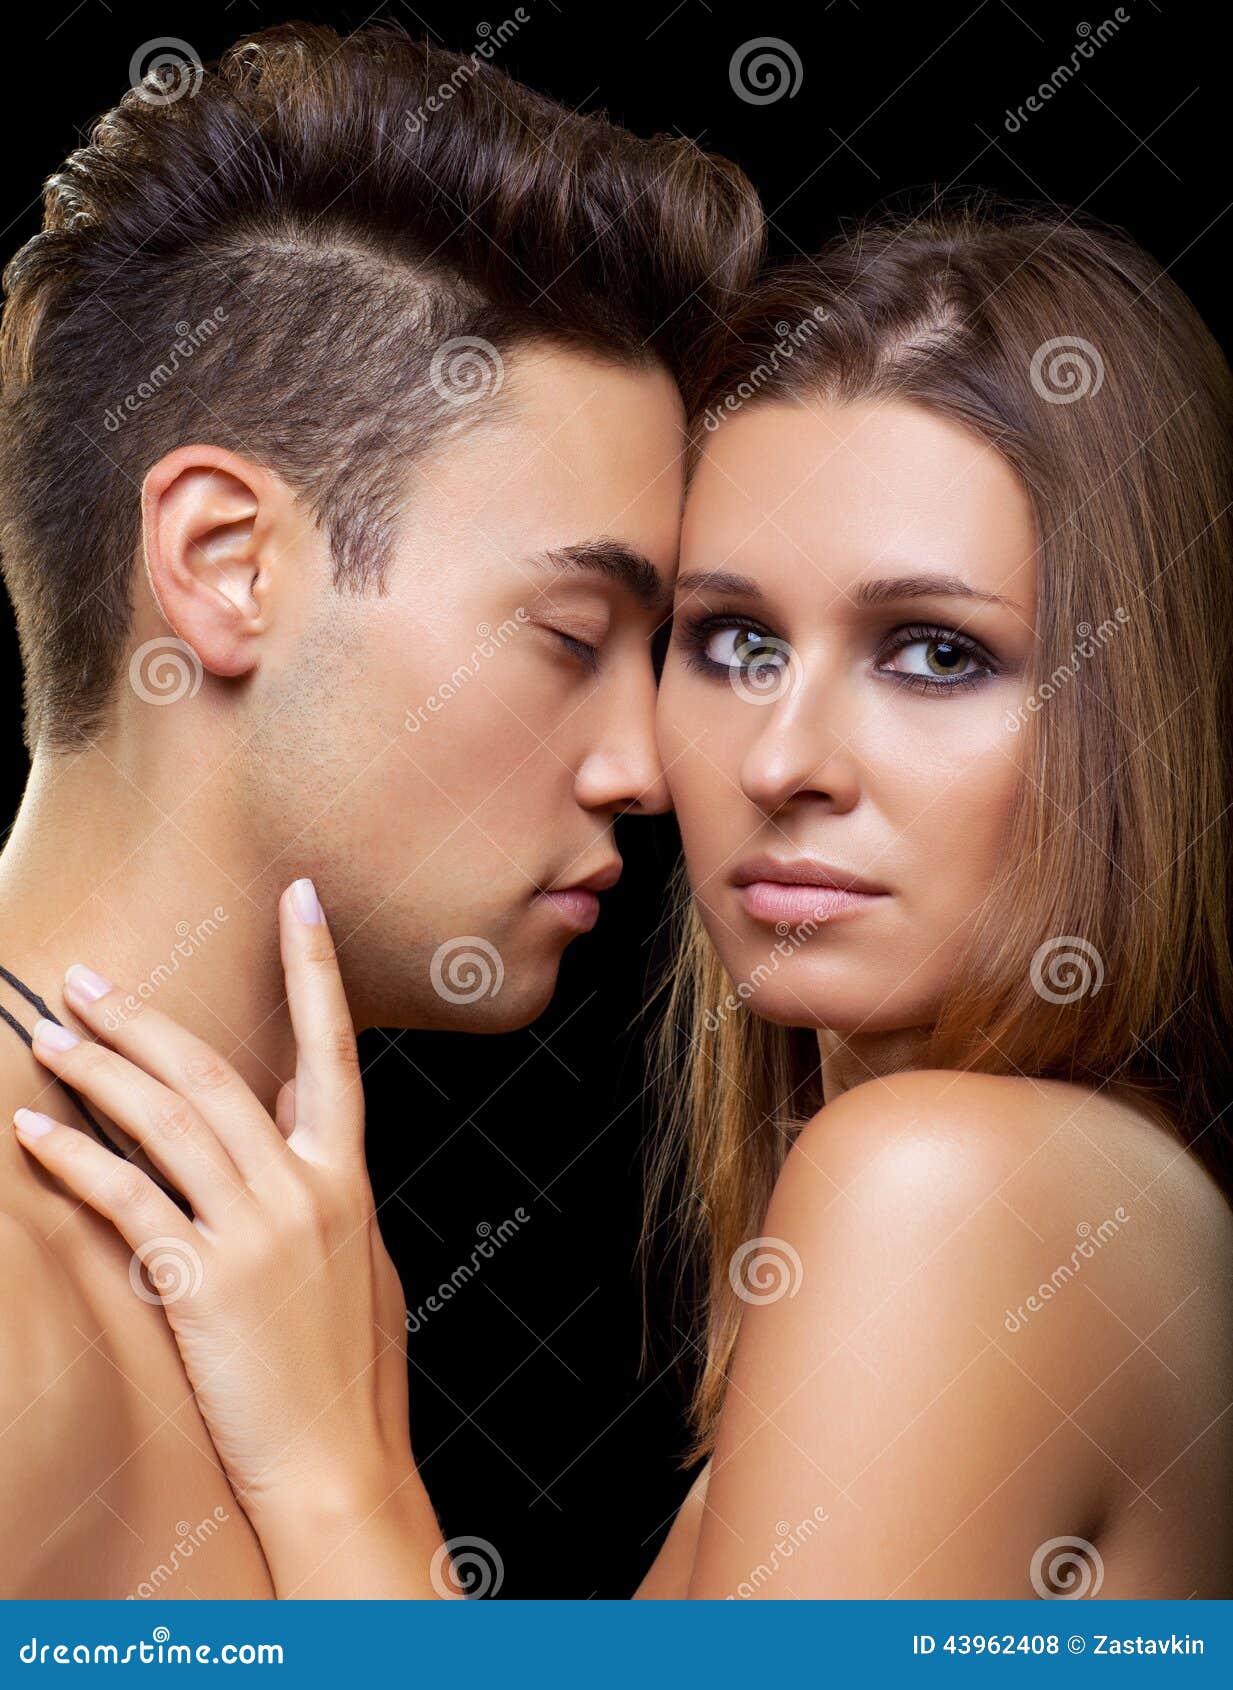 Interracial Heterosexual Sensual Couple Stock Photos